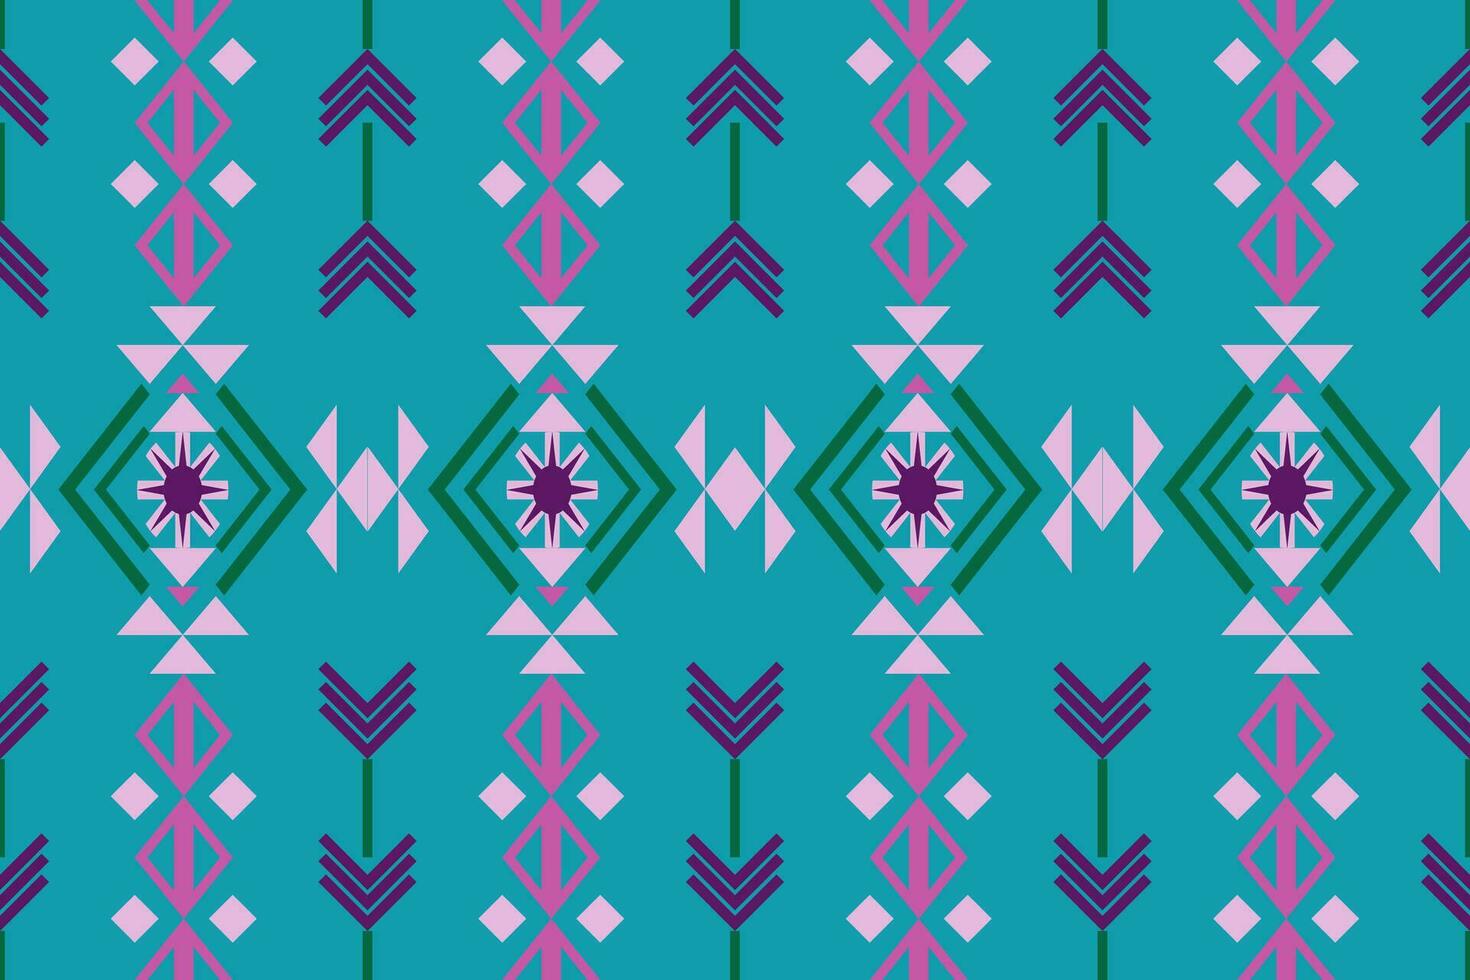 damasco estilo modelo para textil y decoracion.sin costuras modelo en tribal.nativo azteca boho vector diseño.fondo parche modelo con tradicional estilo, diseño para decoracion y textiles